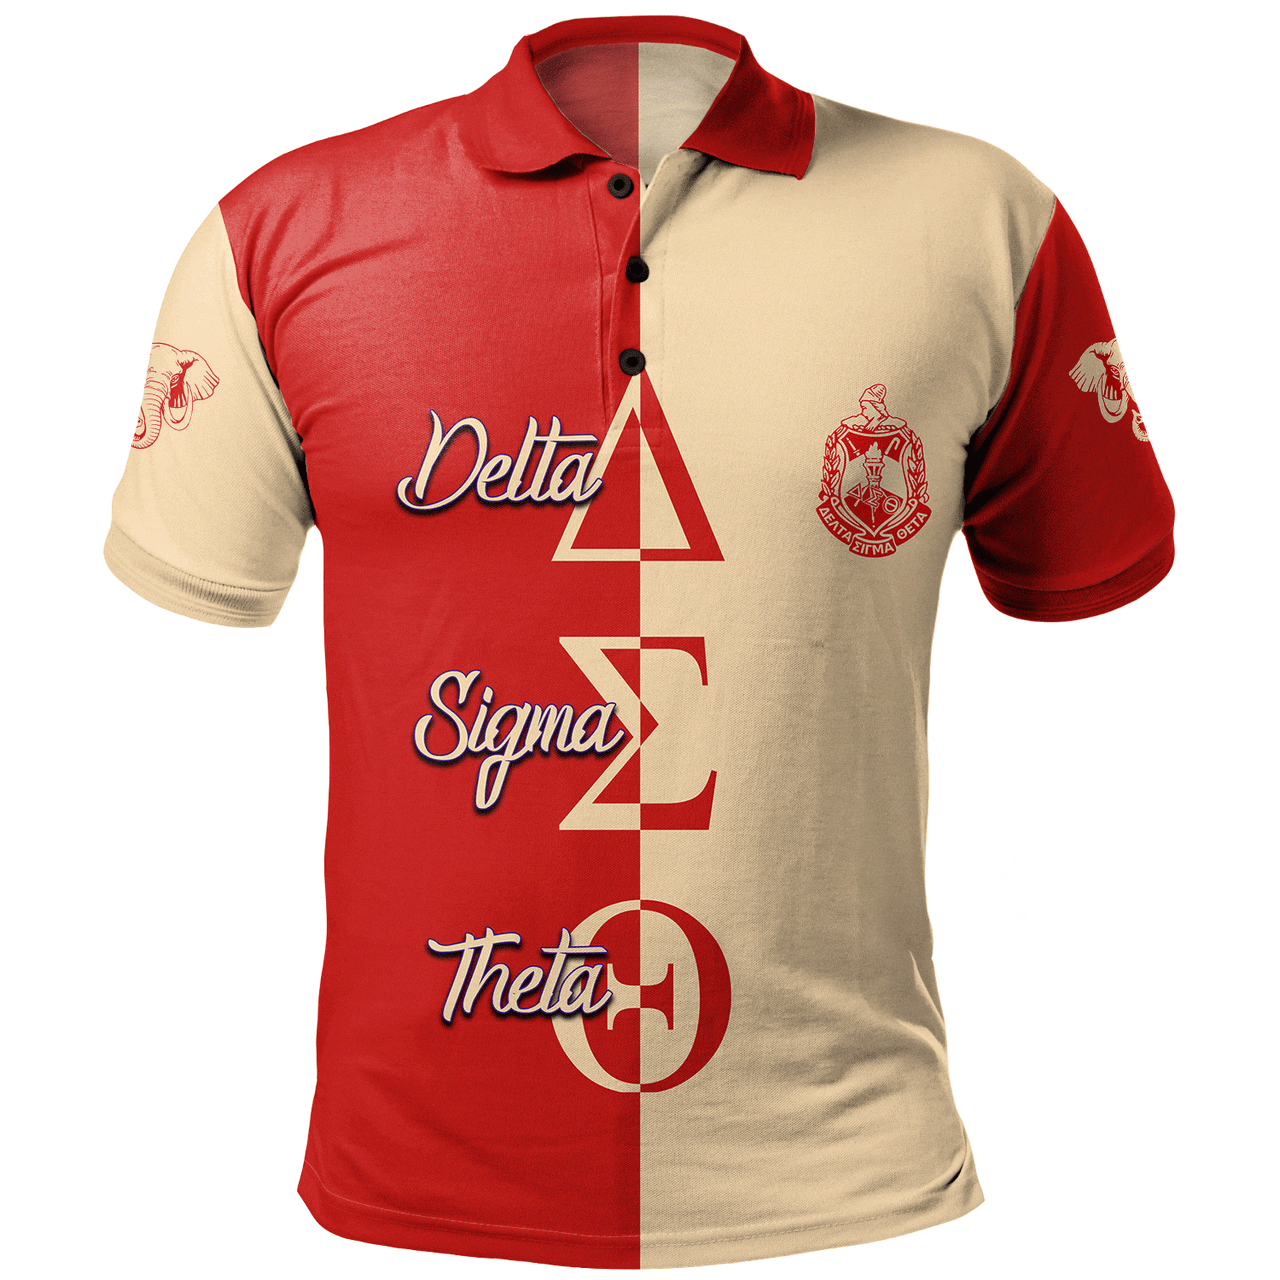 Delta Sigma Theta Polo Shirt Half Style